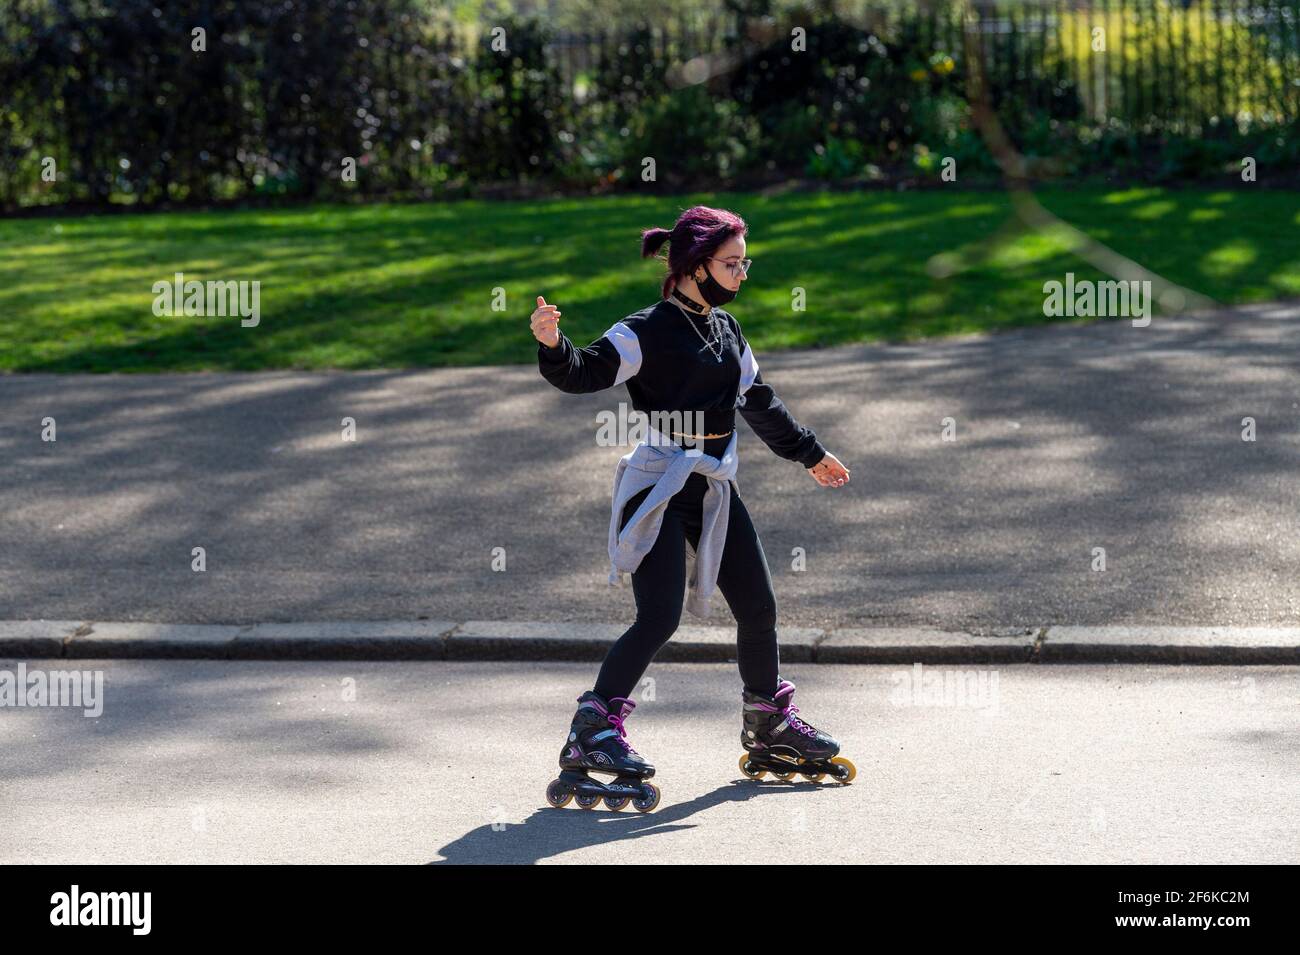 29 mars 2021, Londres, Royaume-Uni : une femme sur des patins vue à Hyde Park à Londres. (Image de crédit : © Dave Rushen/SOPA Images via ZUMA Wire) Banque D'Images